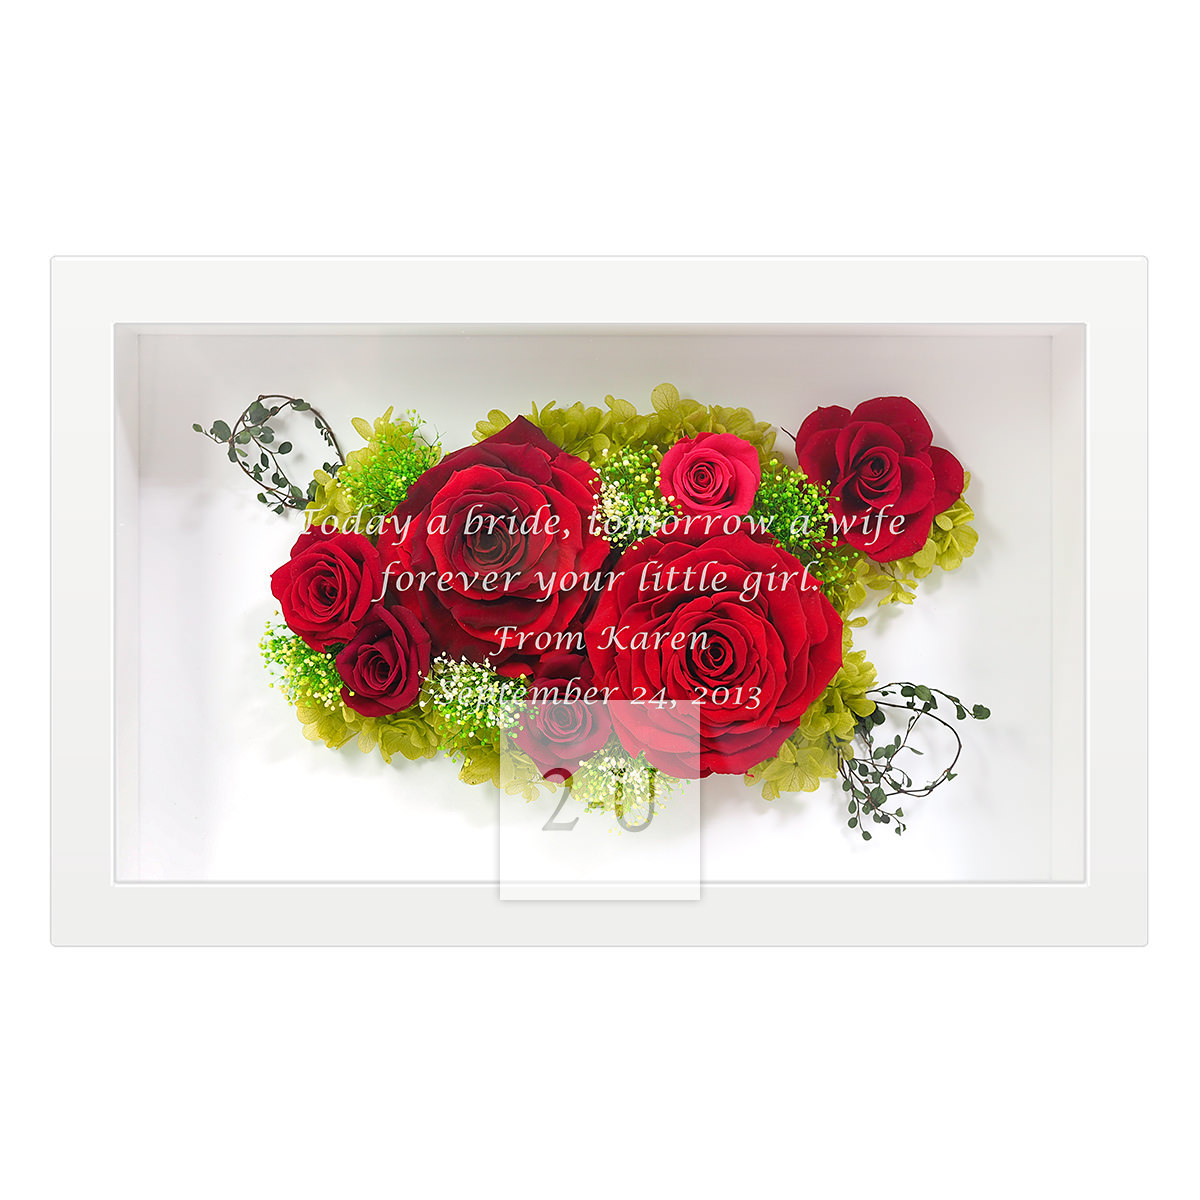 奔放热情红玫瑰保鲜花艺术画框